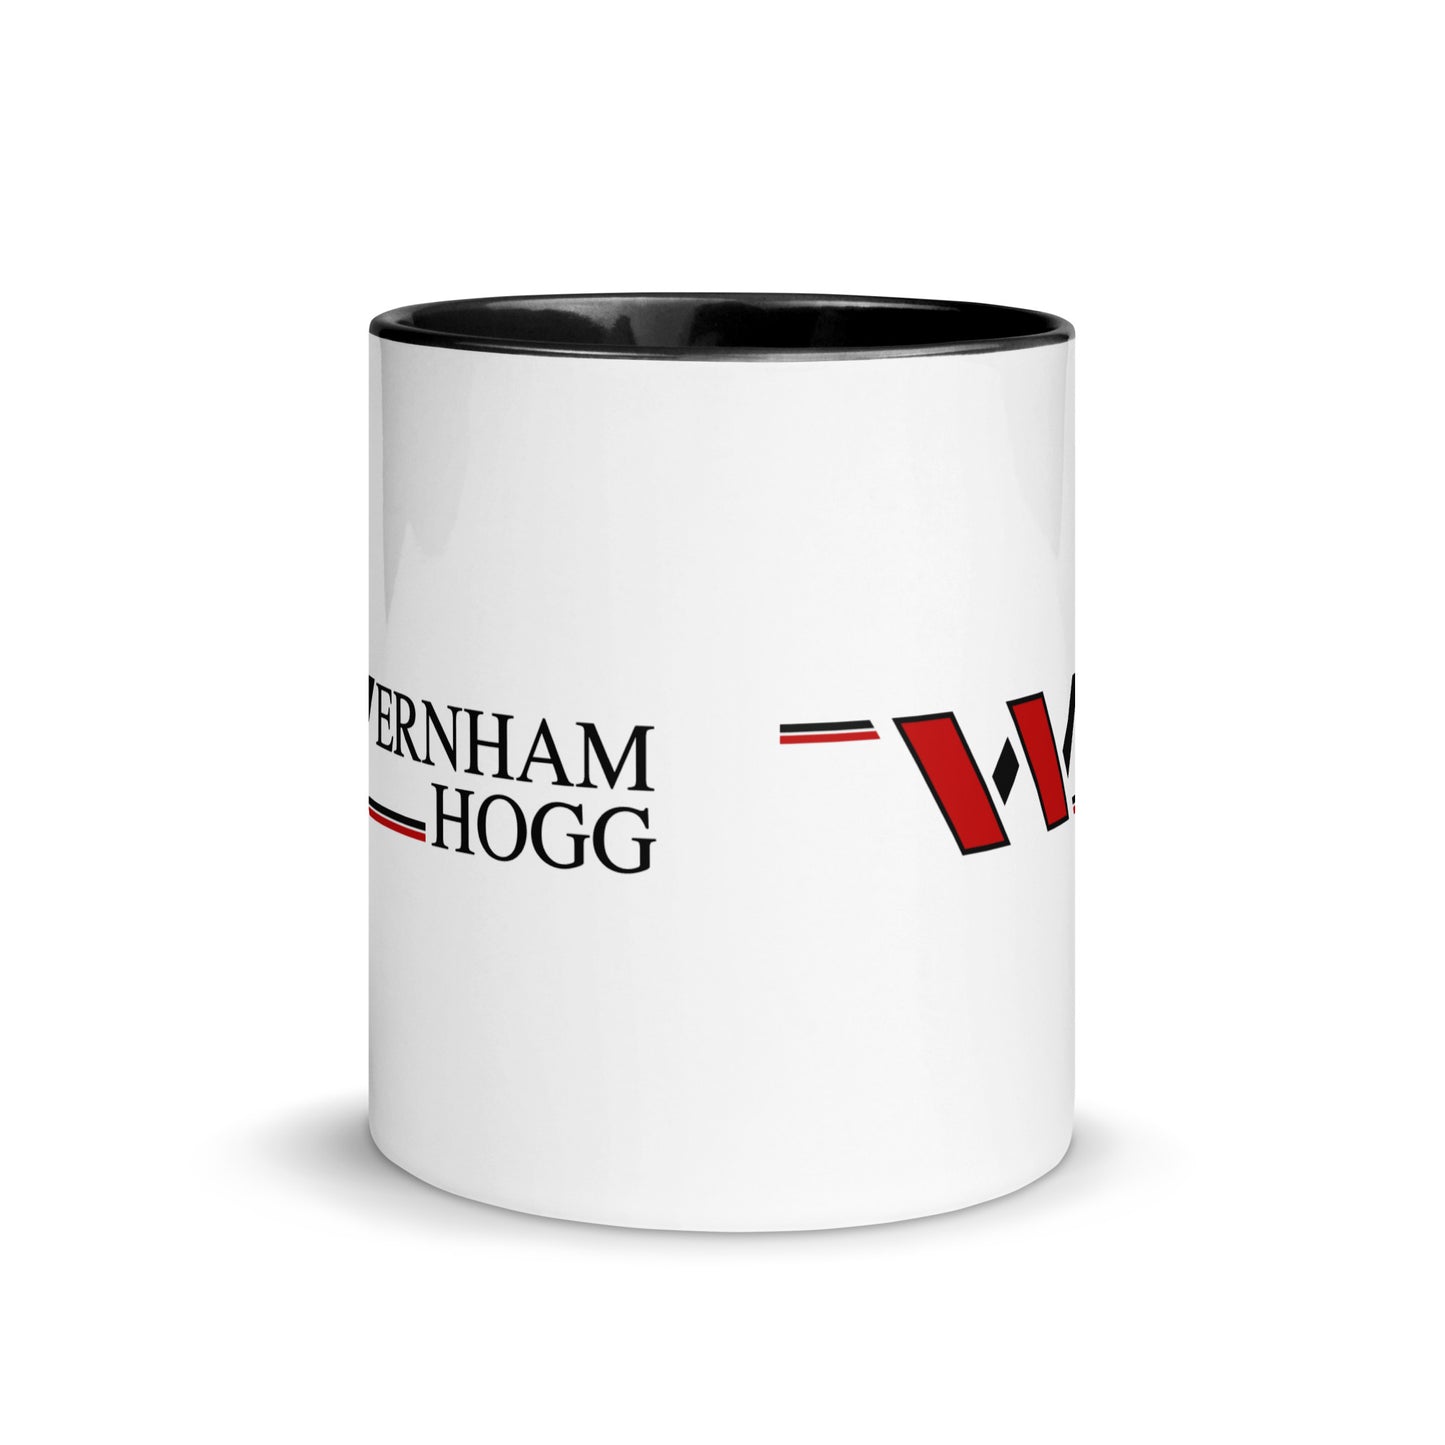 Wernham Hogg Comedy Mug